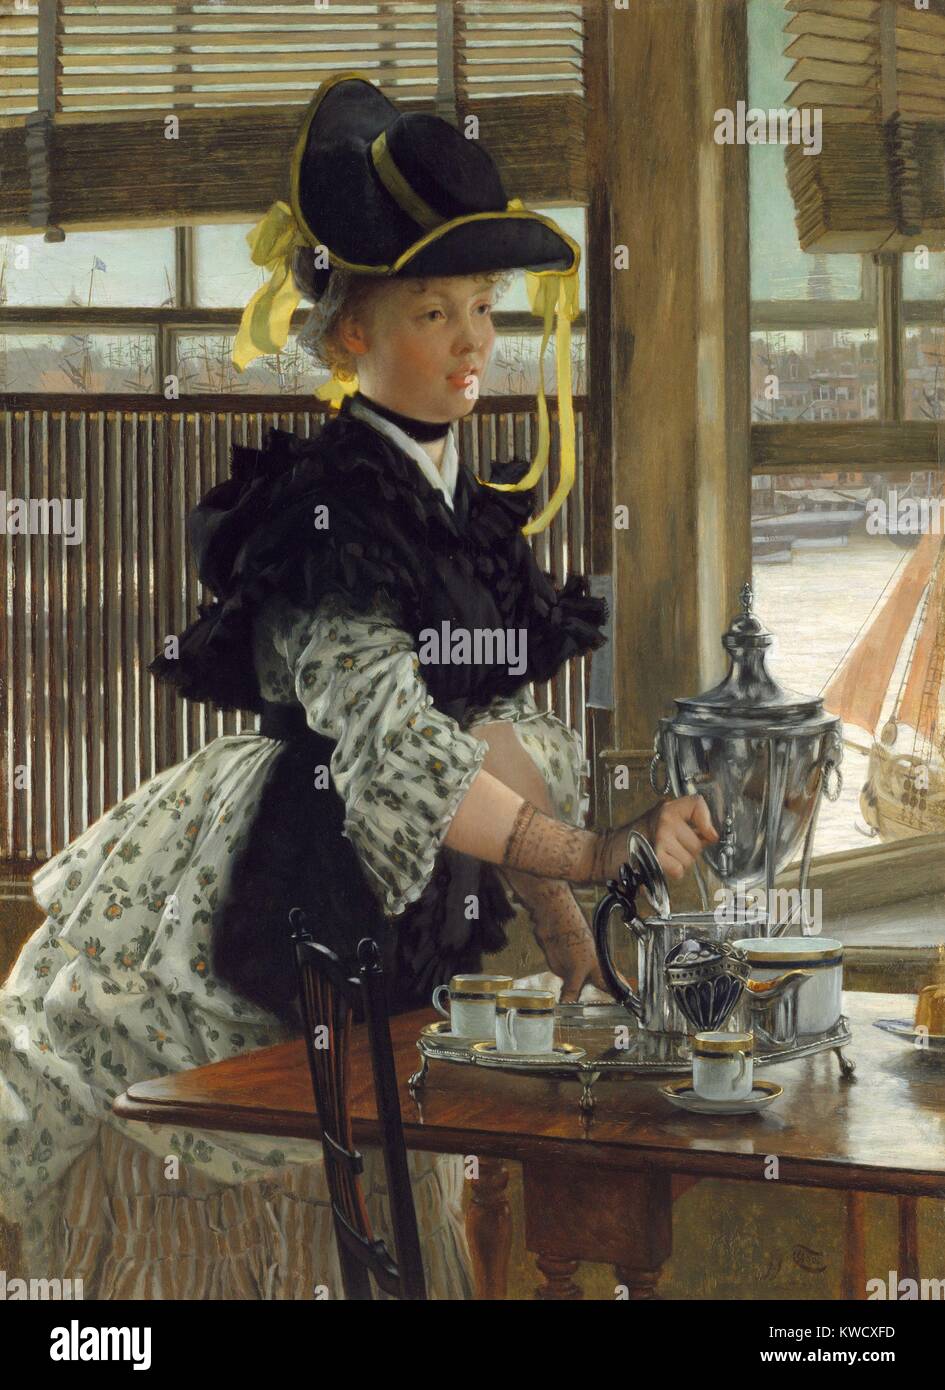 Tee, von James Tissot, 1872, Französisch Realist, impressionistisch, Malerei, Öl auf Leinwand. Tissot oft gemalt elegant Frauen in Szenen des modernen Lebens, die sehr beliebt waren, mit England, wo er in den 1870er Jahren malte gezeigt gekleidet. Hinweis das Stadtbild durch das Fenster gesehen (BSLOC 2017 3 162) Stockfoto